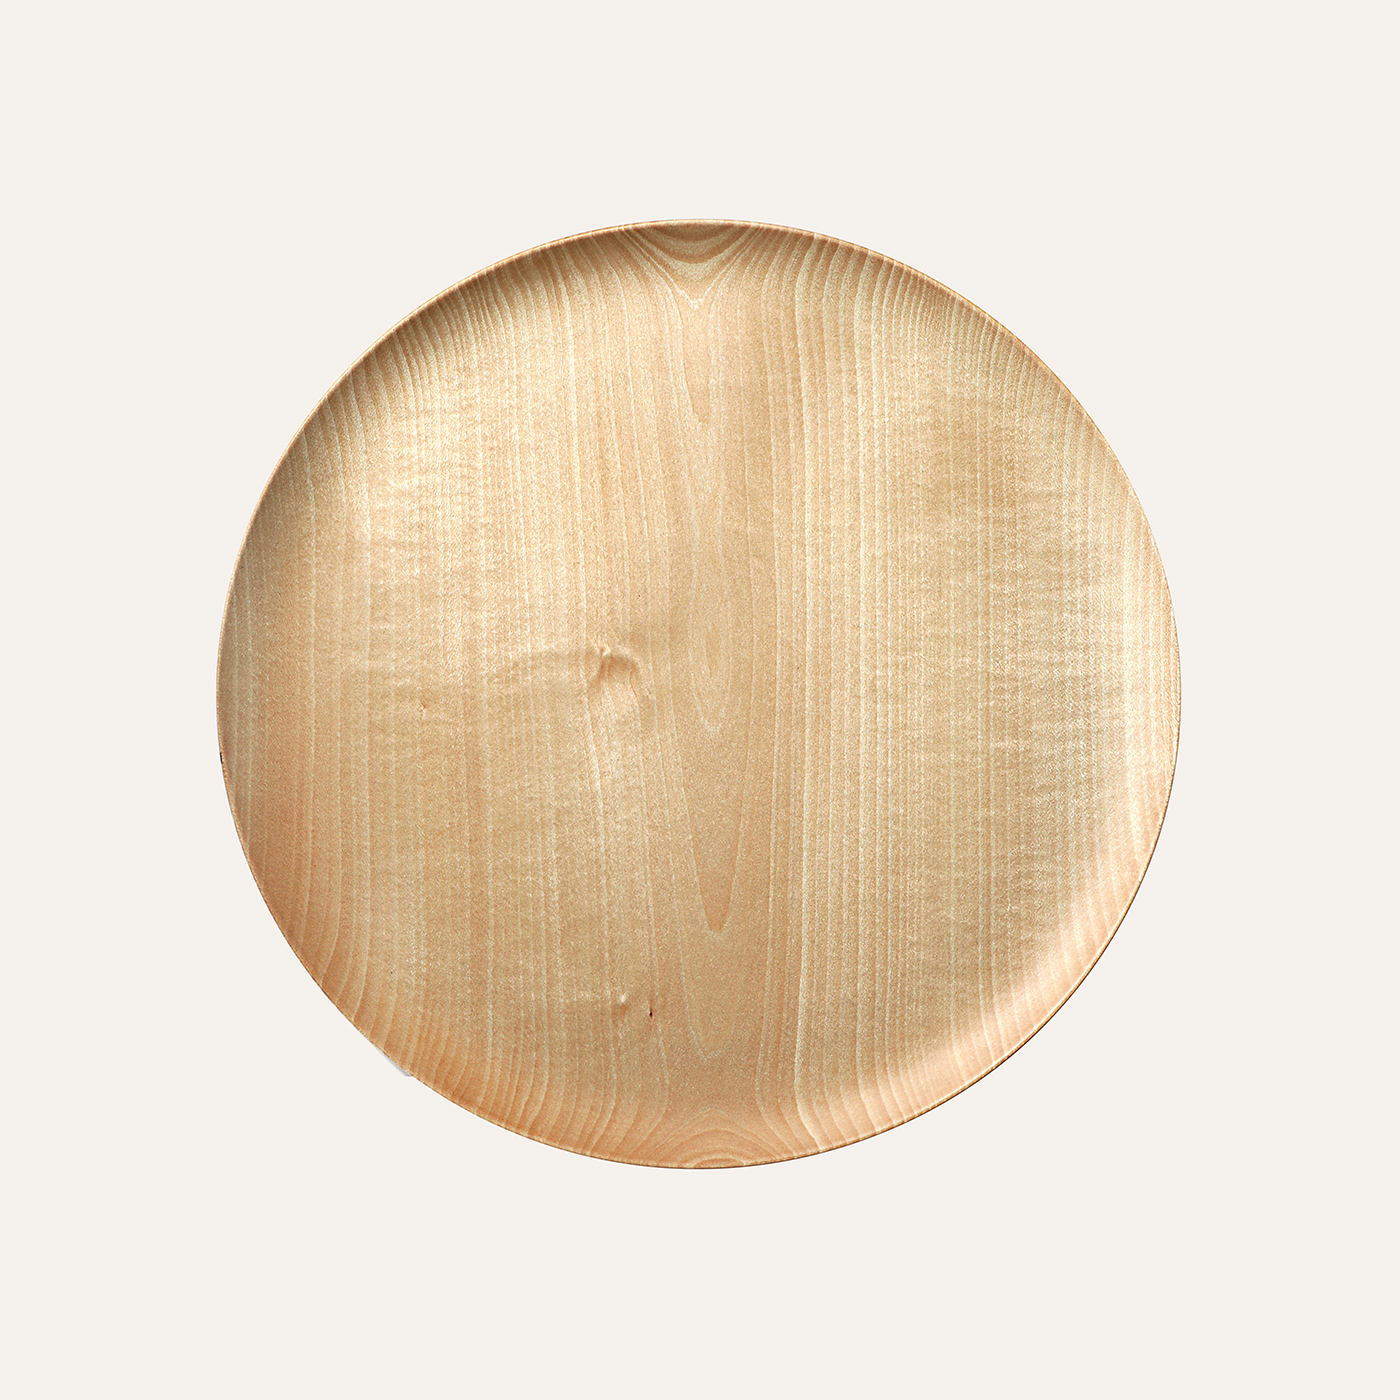 Cara wood plate L